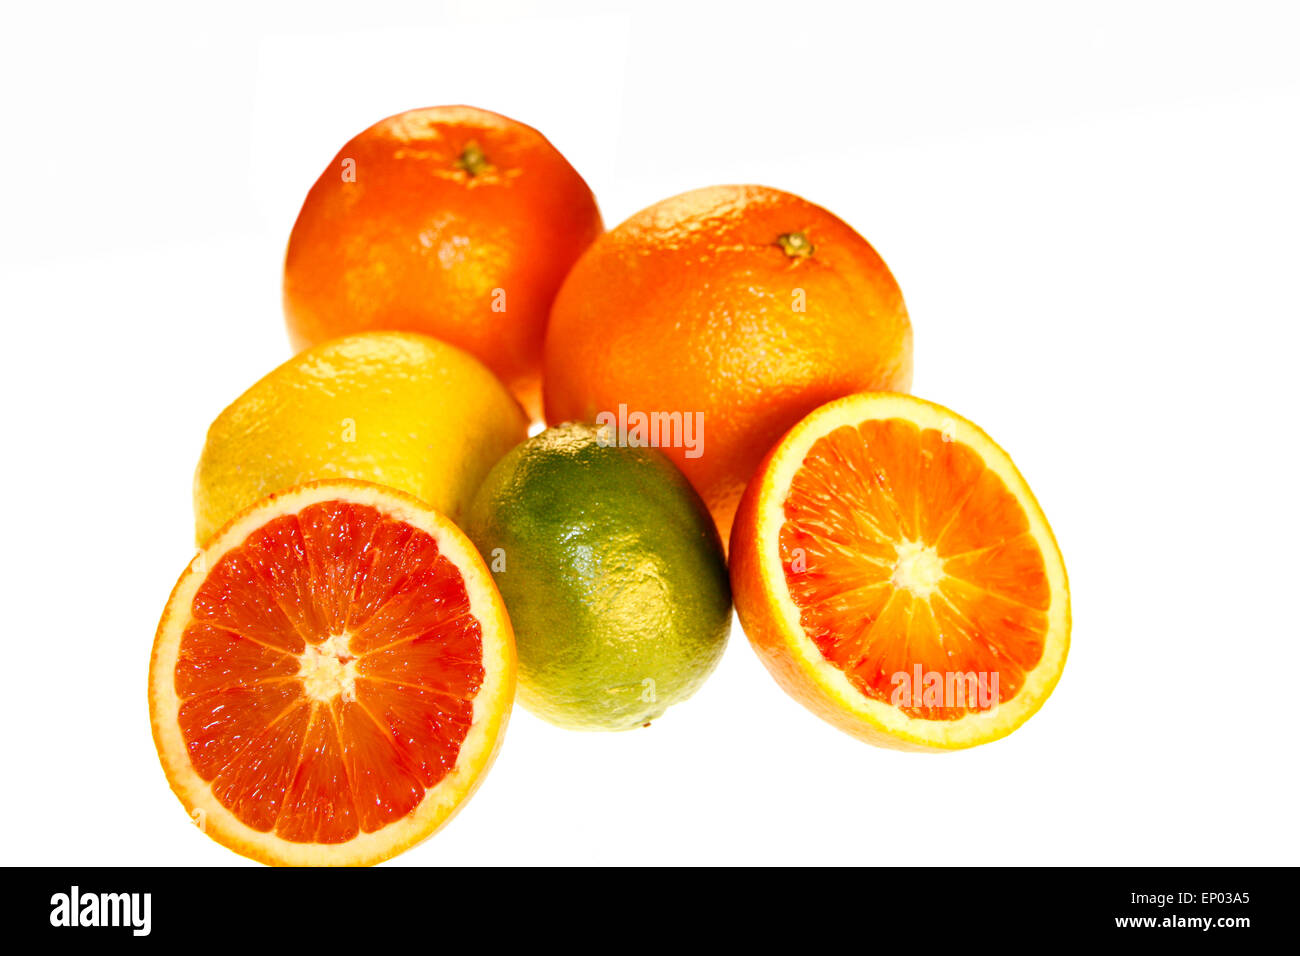 Suedfruechte : Blutorange, Zitrone, Orange, limette - Symbolbild Nahrungsmittel. Banque D'Images